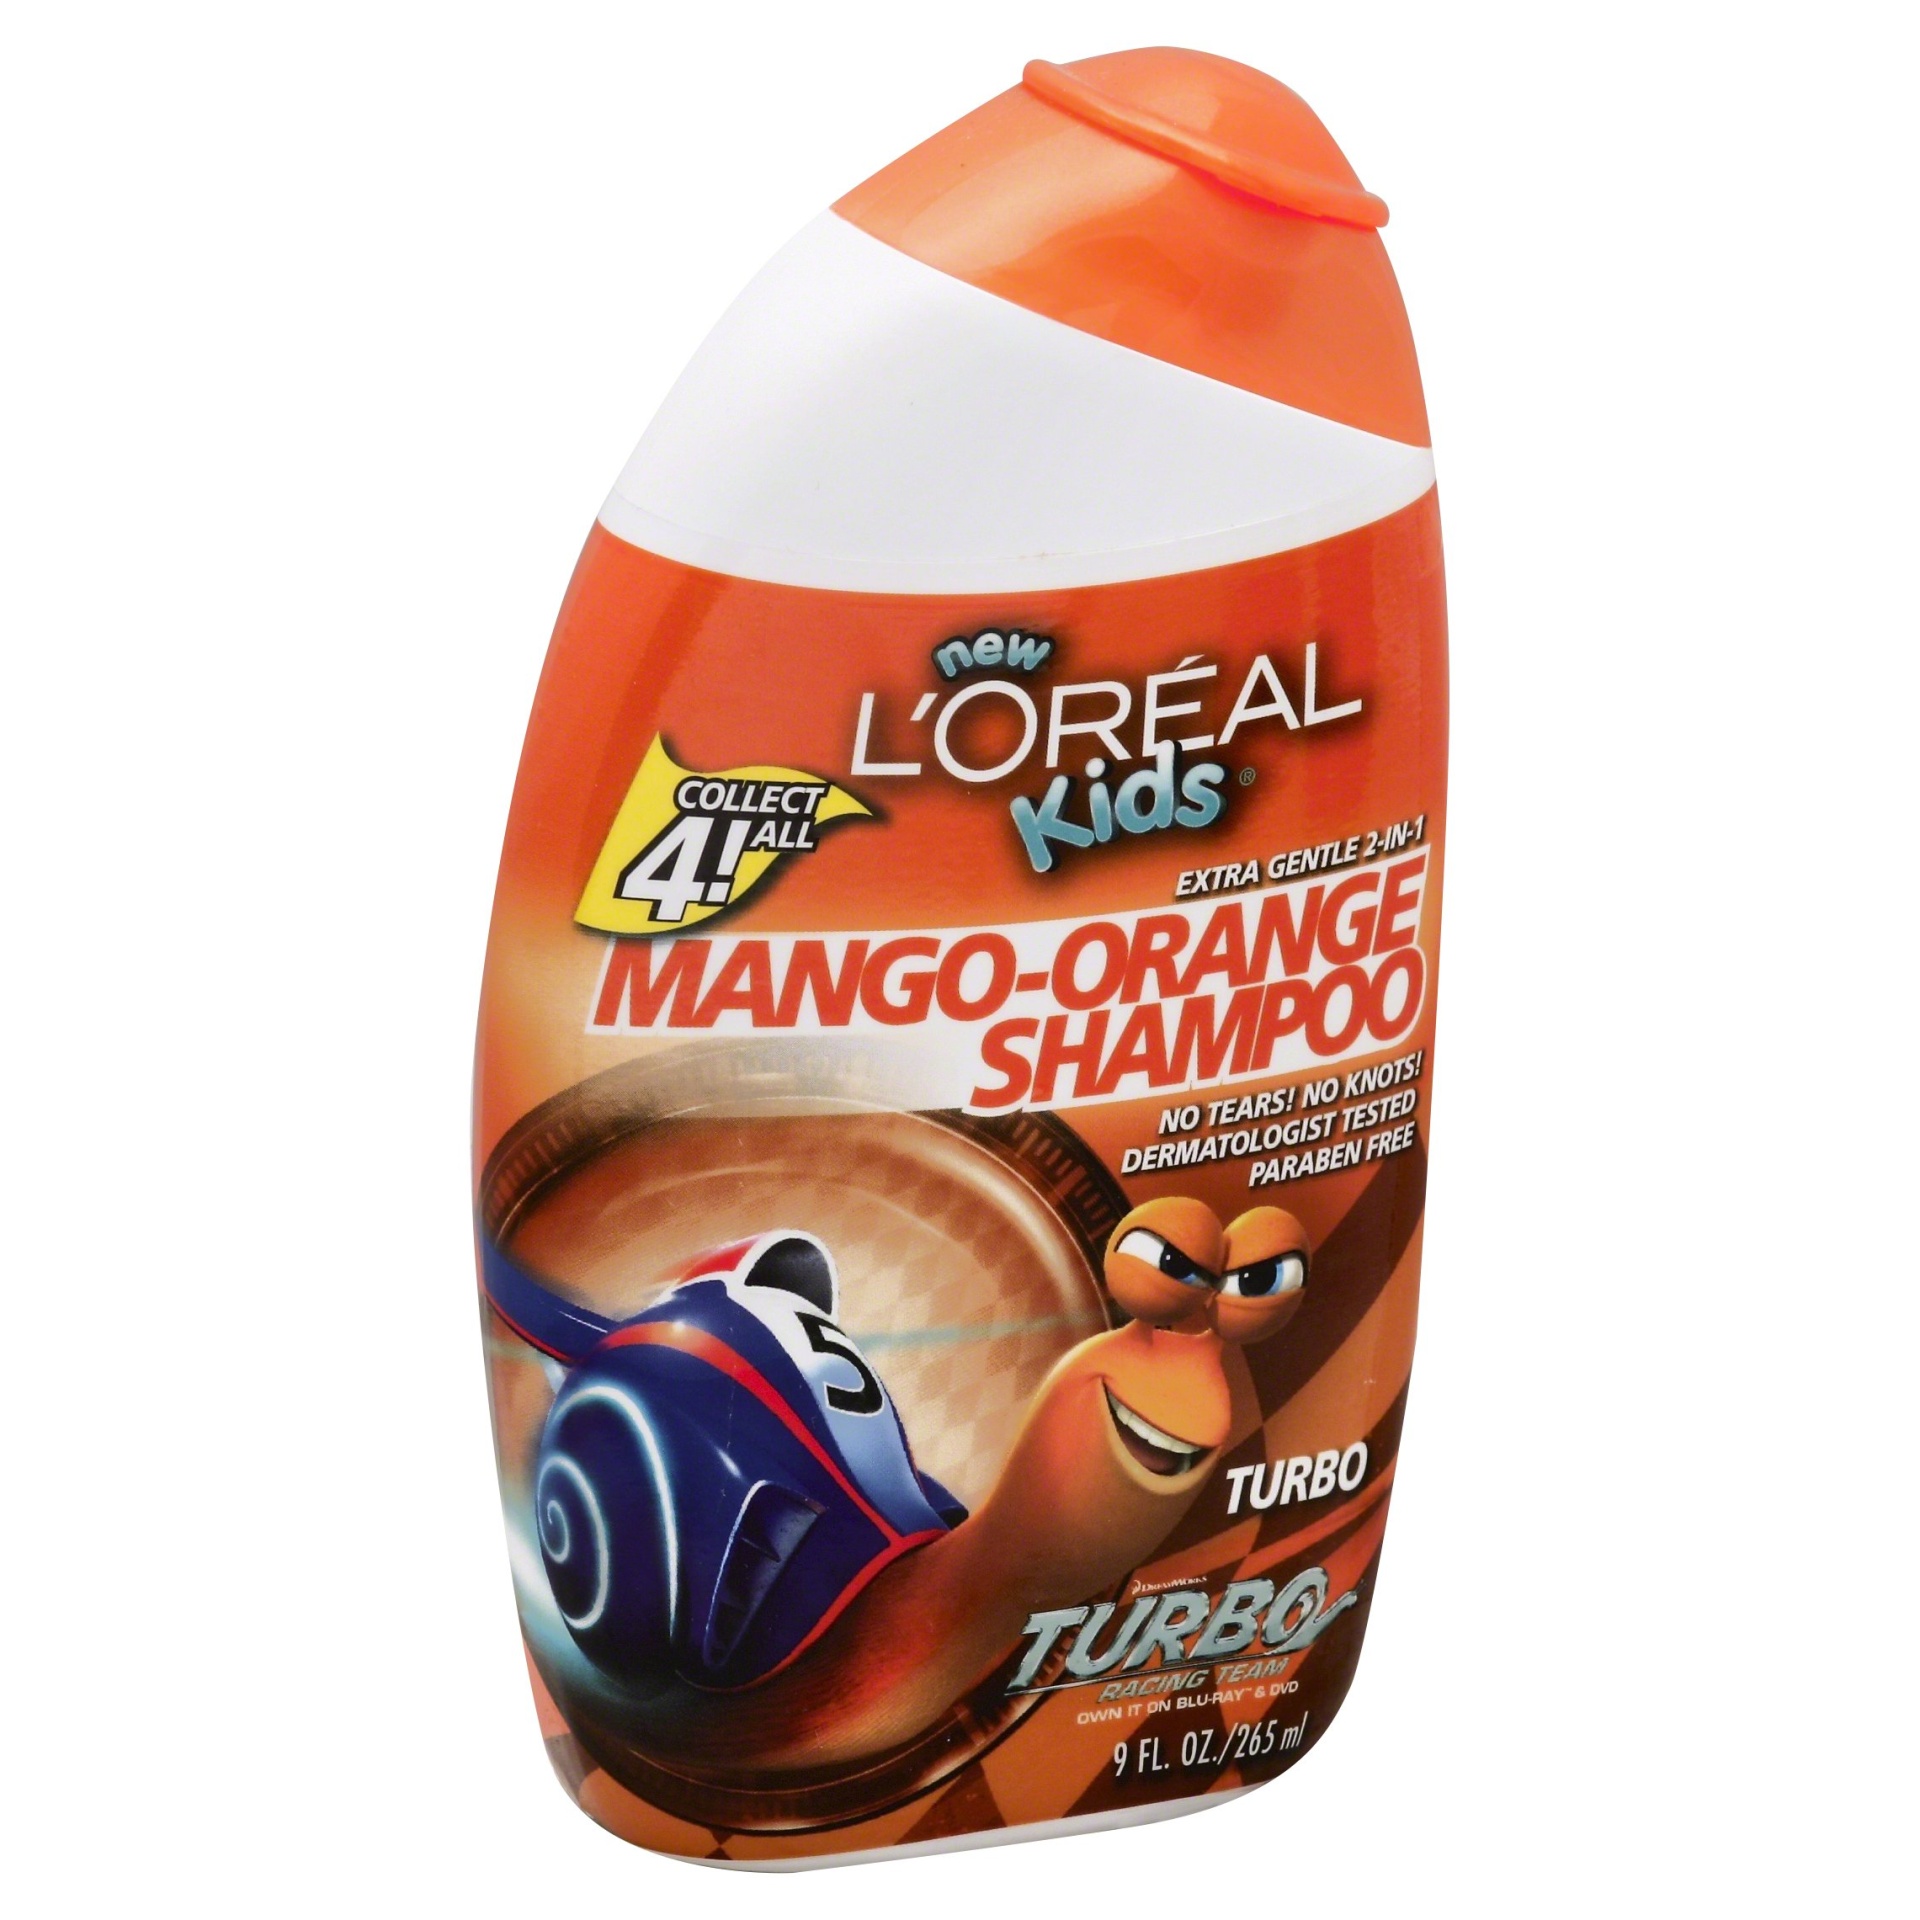 slide 1 of 5, L'Oréal Dragon 2 Kids Extra Gentle 2 in 1 Orange Shampoo, 9 fl oz